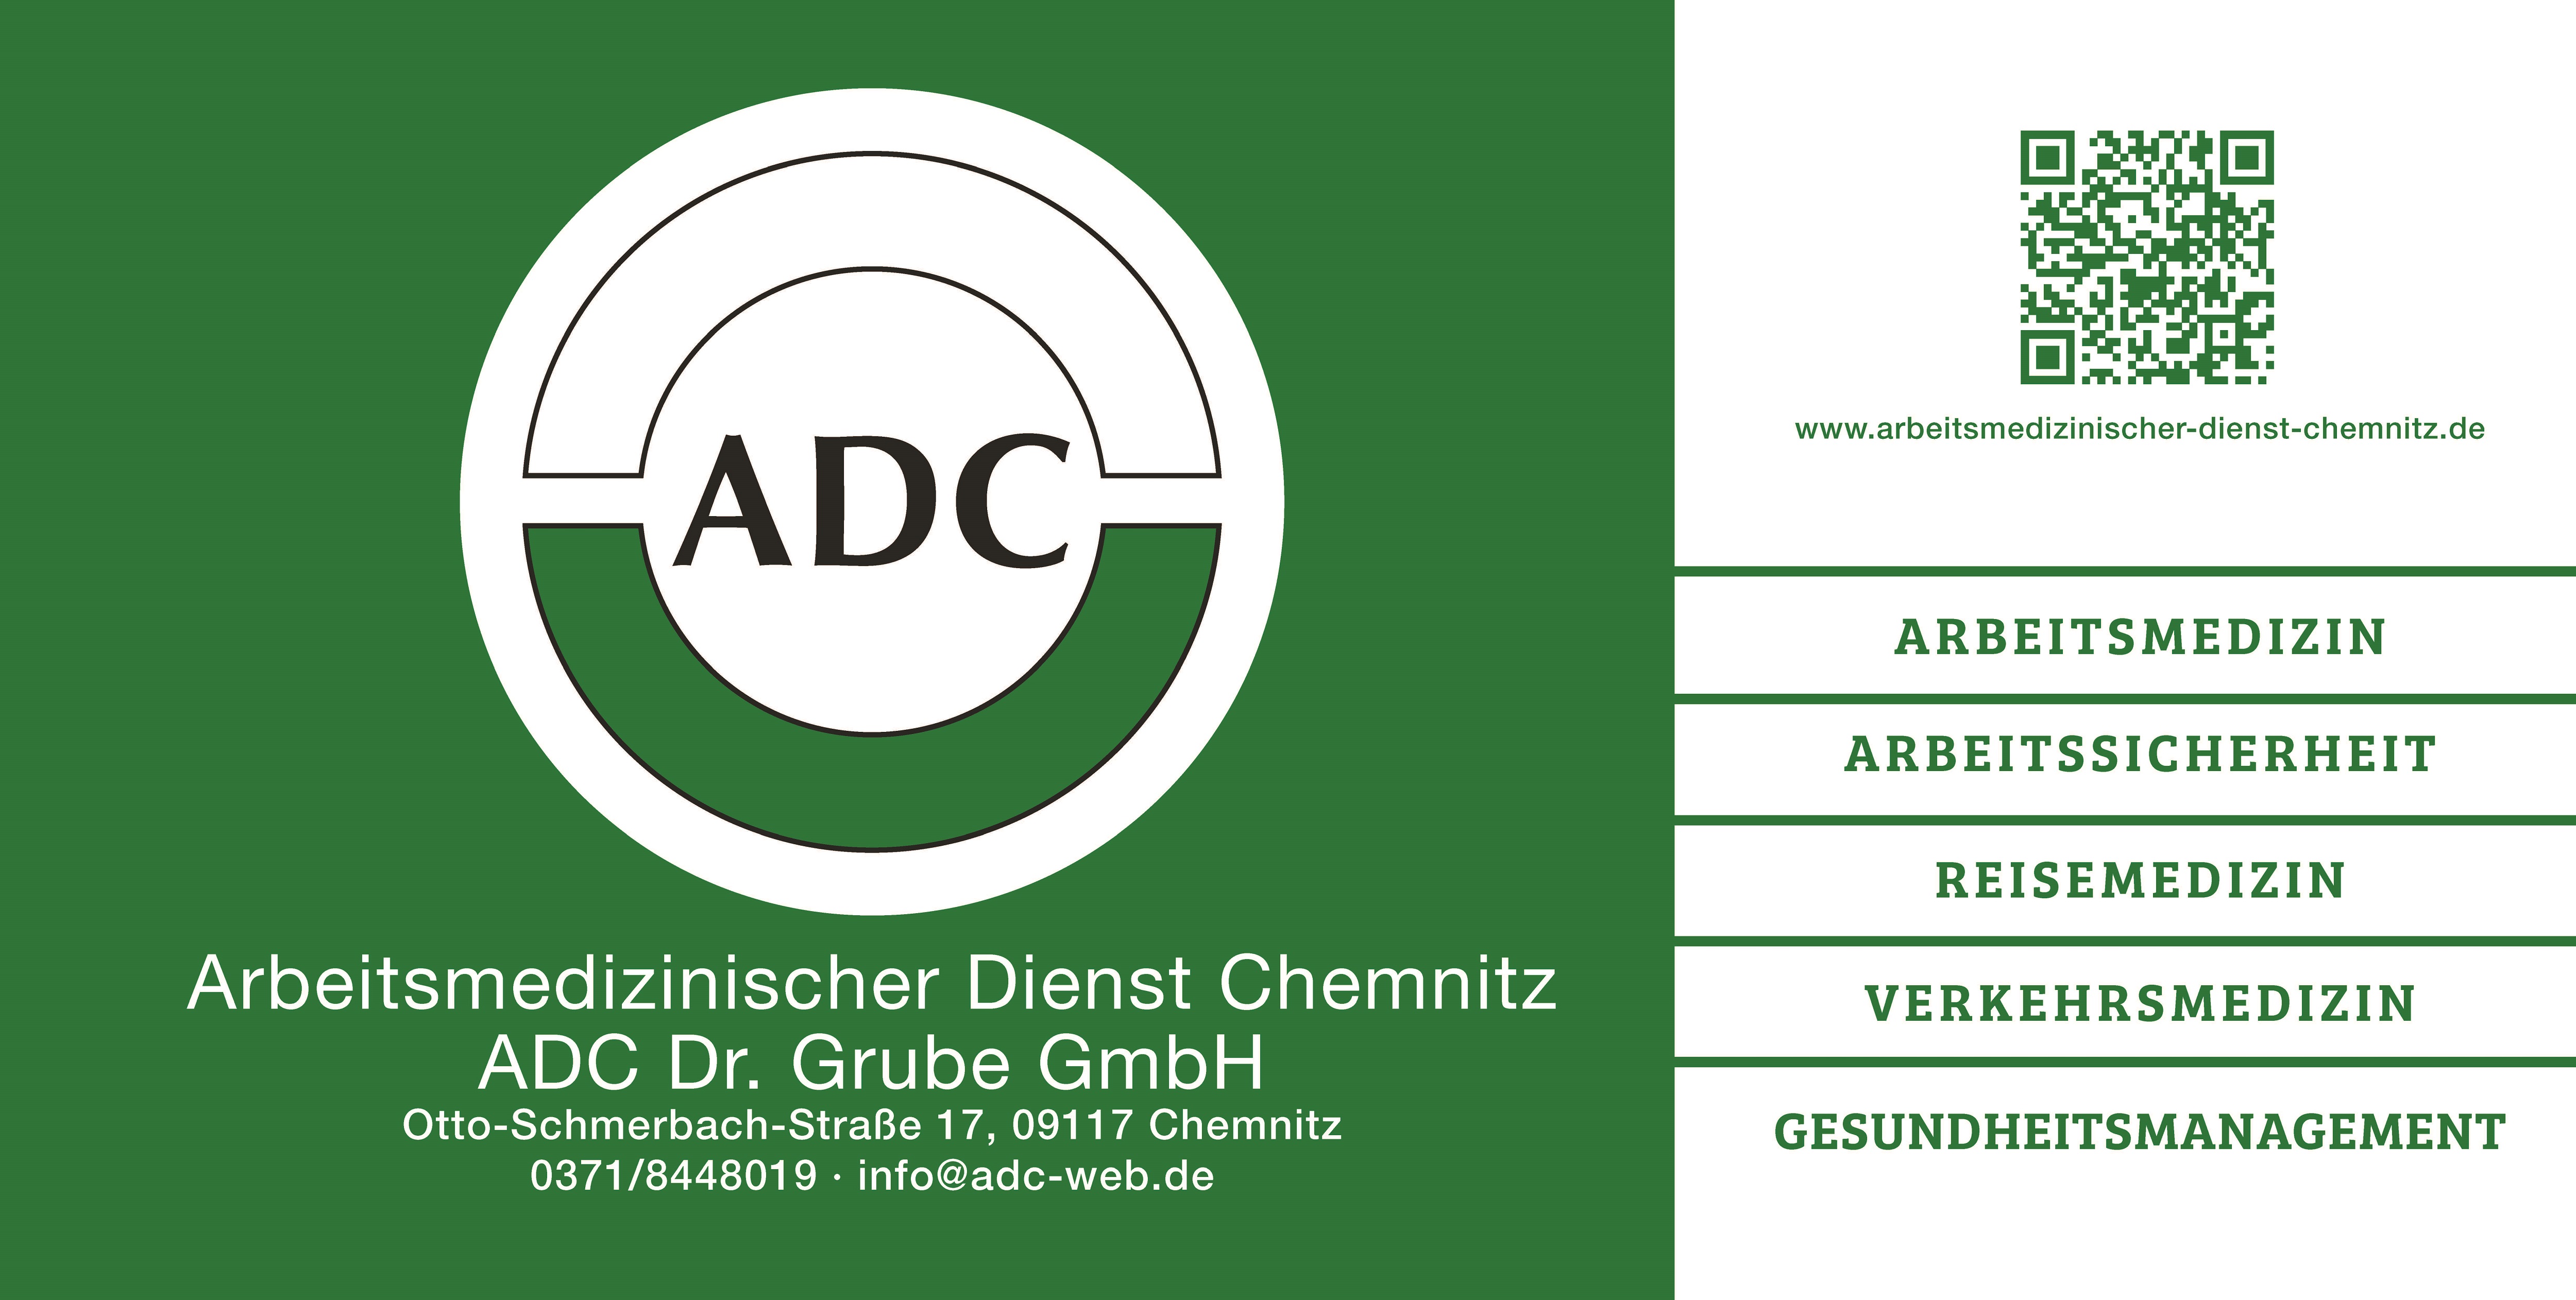 Arbeitsmedizinischer Dienst Chemnitz ADC Dr. Grube GmbH, Otto-Schmerbach-Straße 17 in Chemnitz